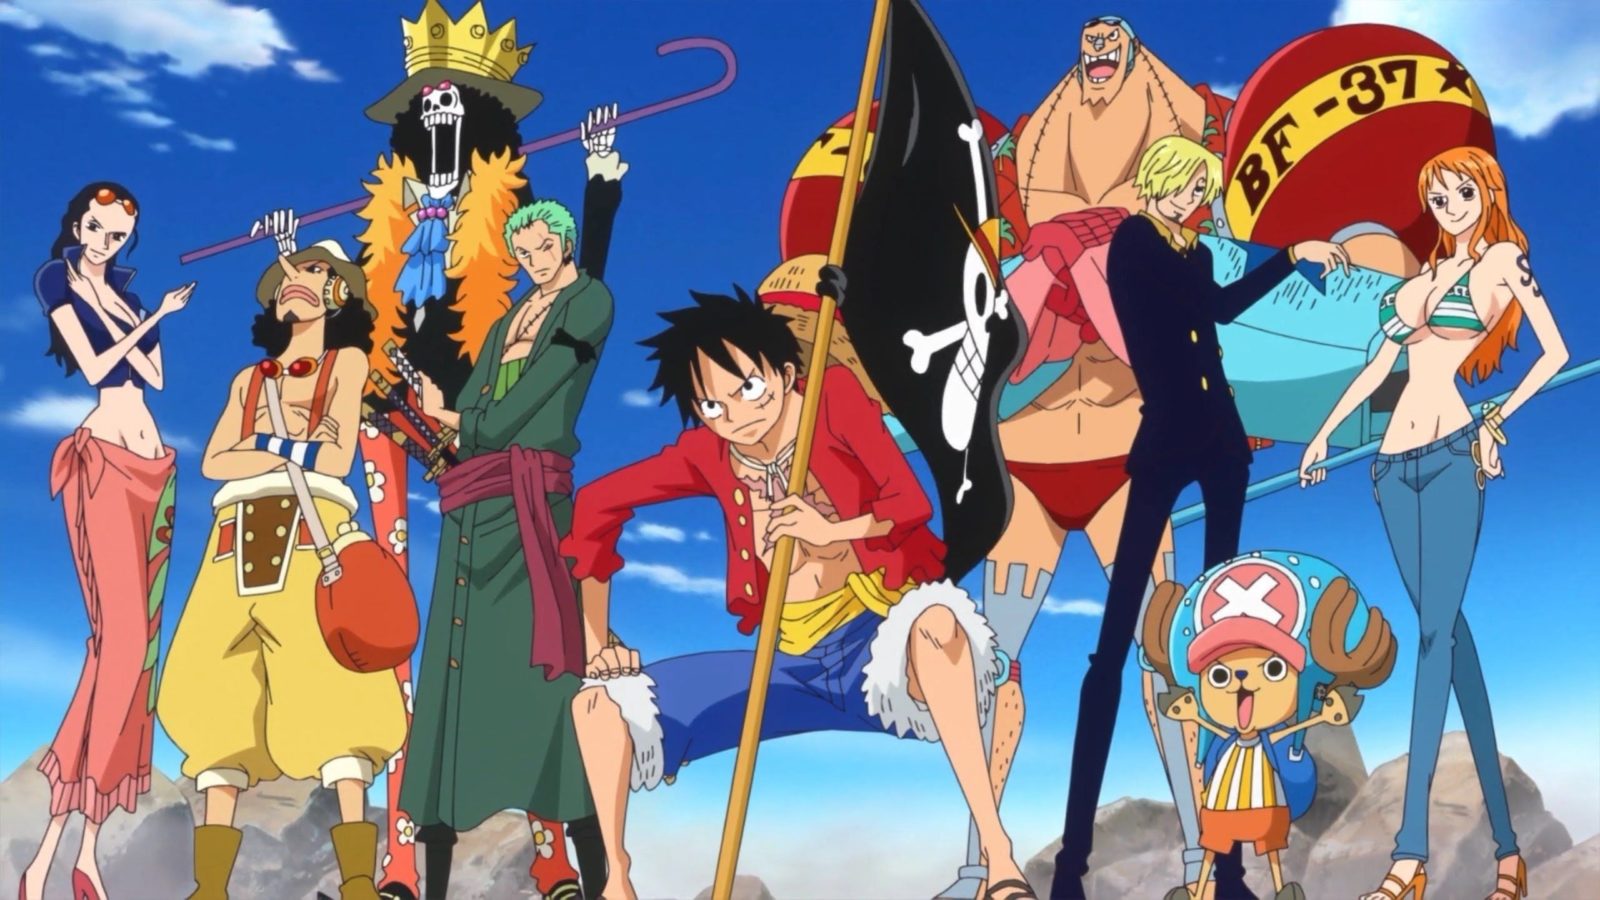 Novas Imagens Vazadas da Live Action de One Piece!